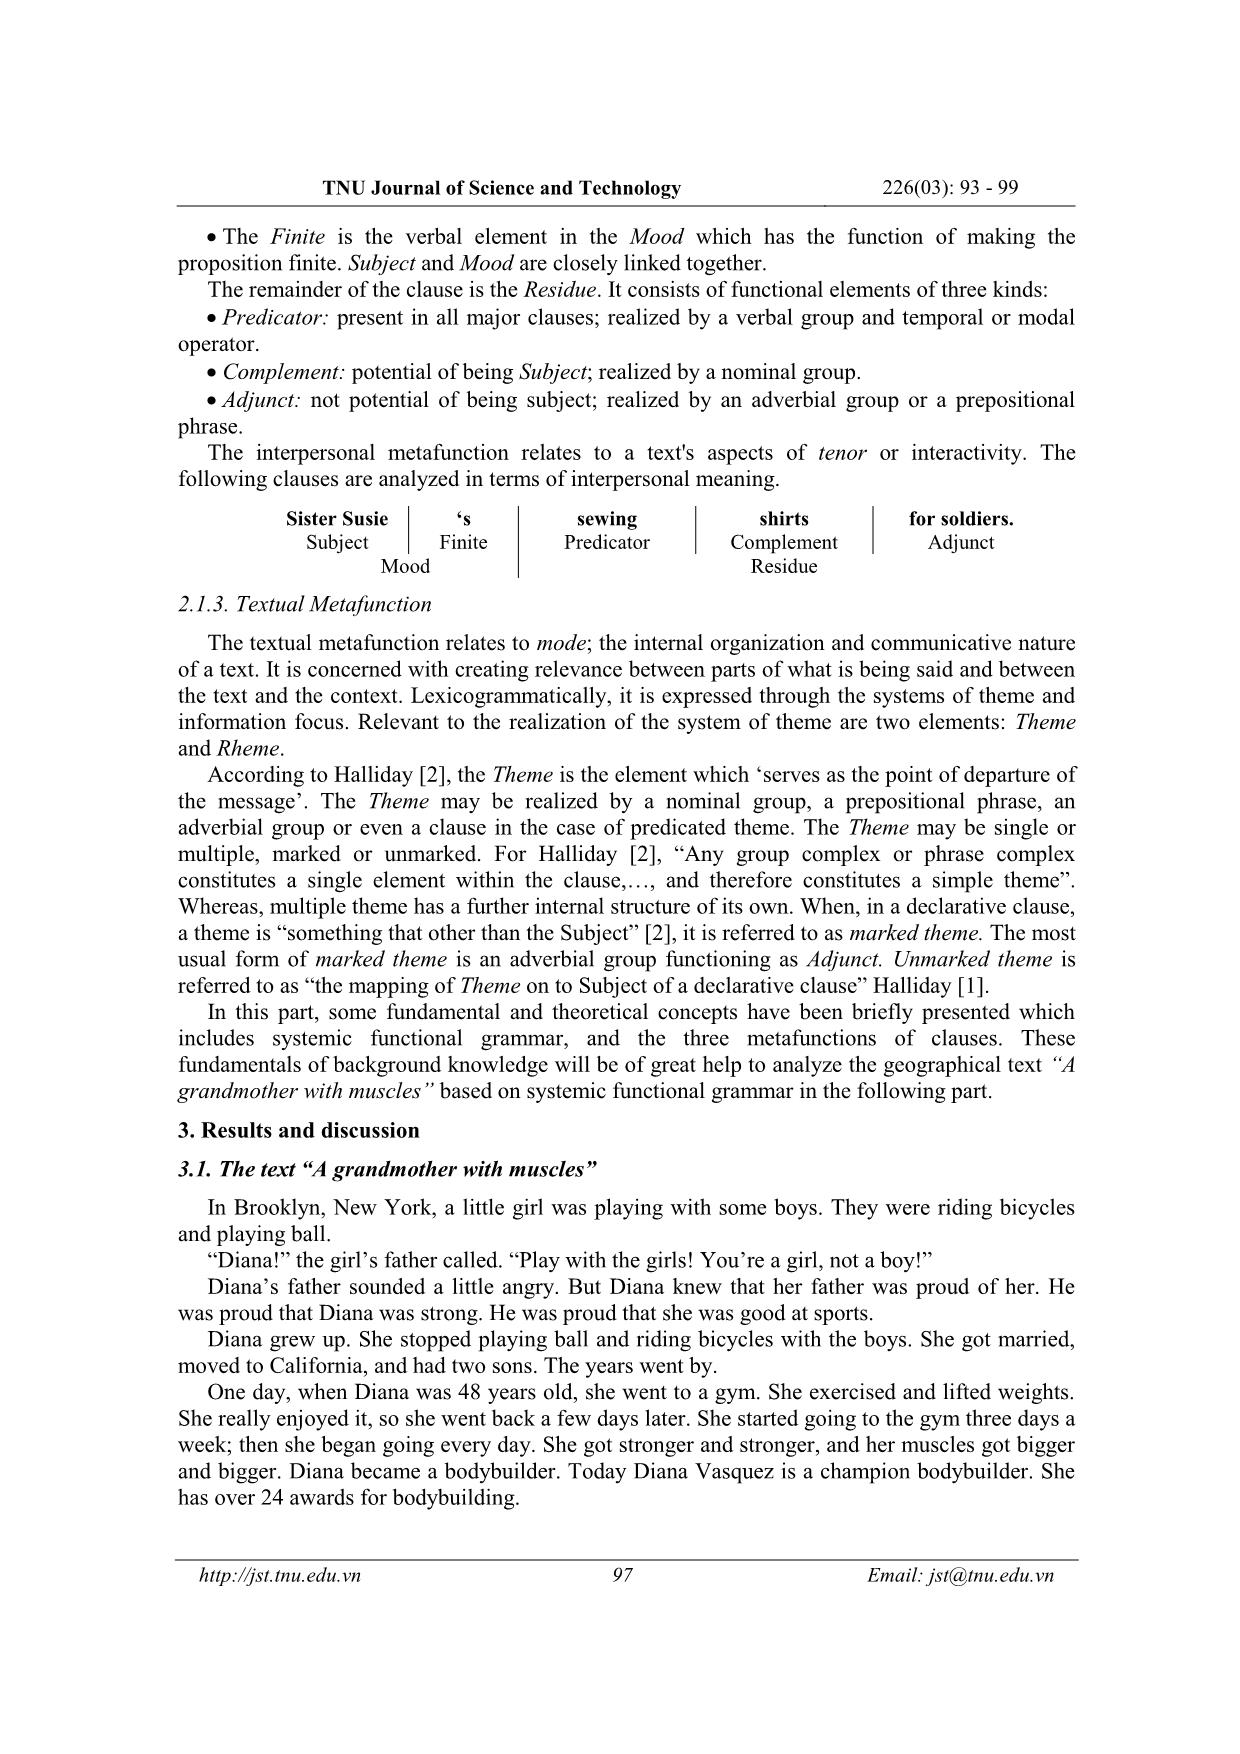 Phân tích hệ thống chuyển tác, thức và cấu trúc đề - Thuyết của văn bản “A grandmother with muscles” dựa vào lý thuyết ngữ pháp chức năng hệ thống của mark haliday trang 5